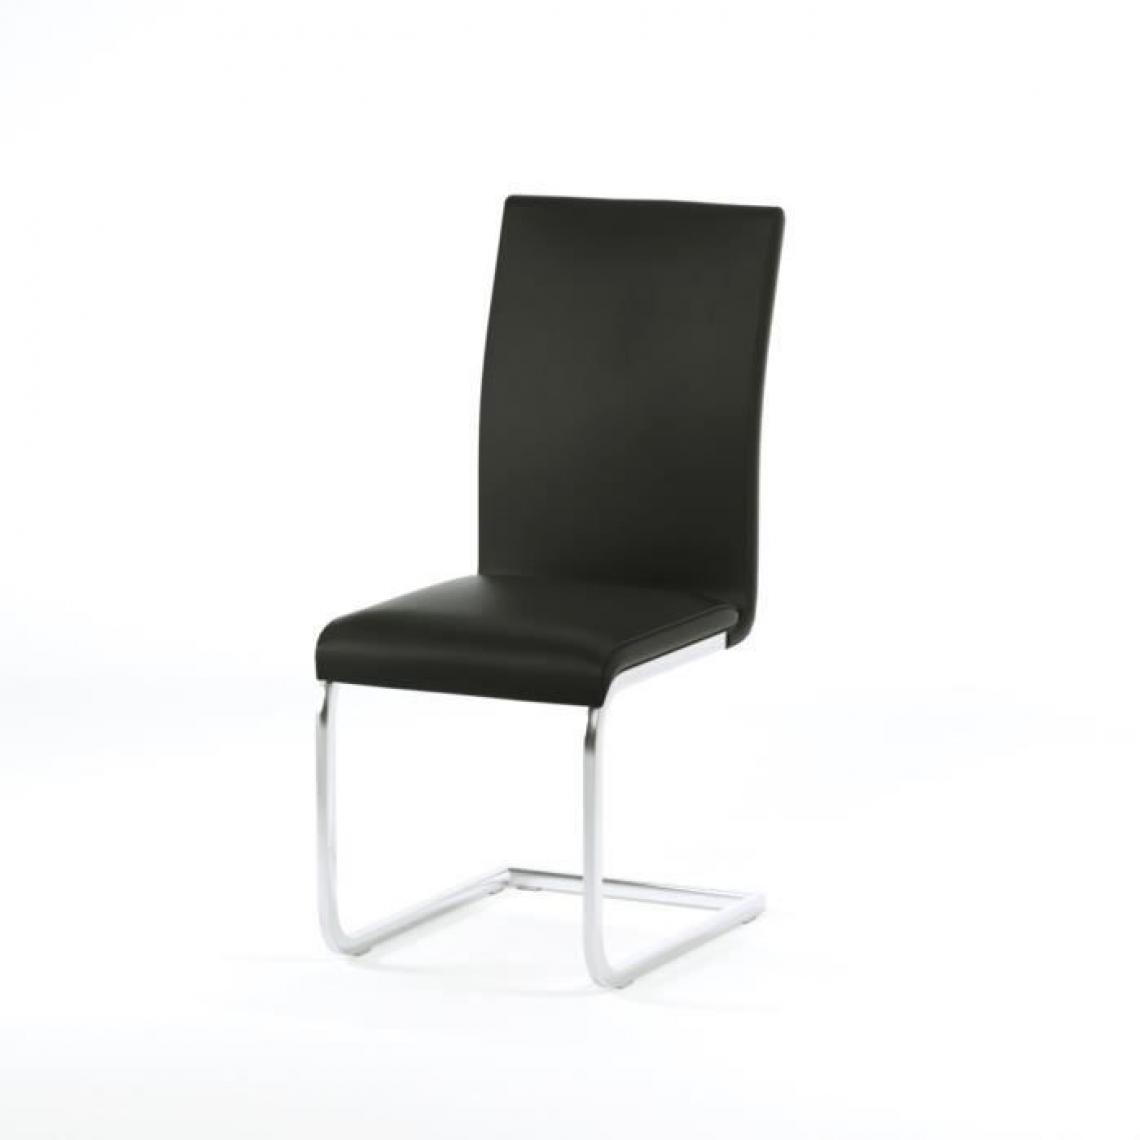 Icaverne - CHAISE LEA Lot de 2 chaises de salle a manger - Simili noir - Contemporain - L 43 x P 56 cm - Chaises